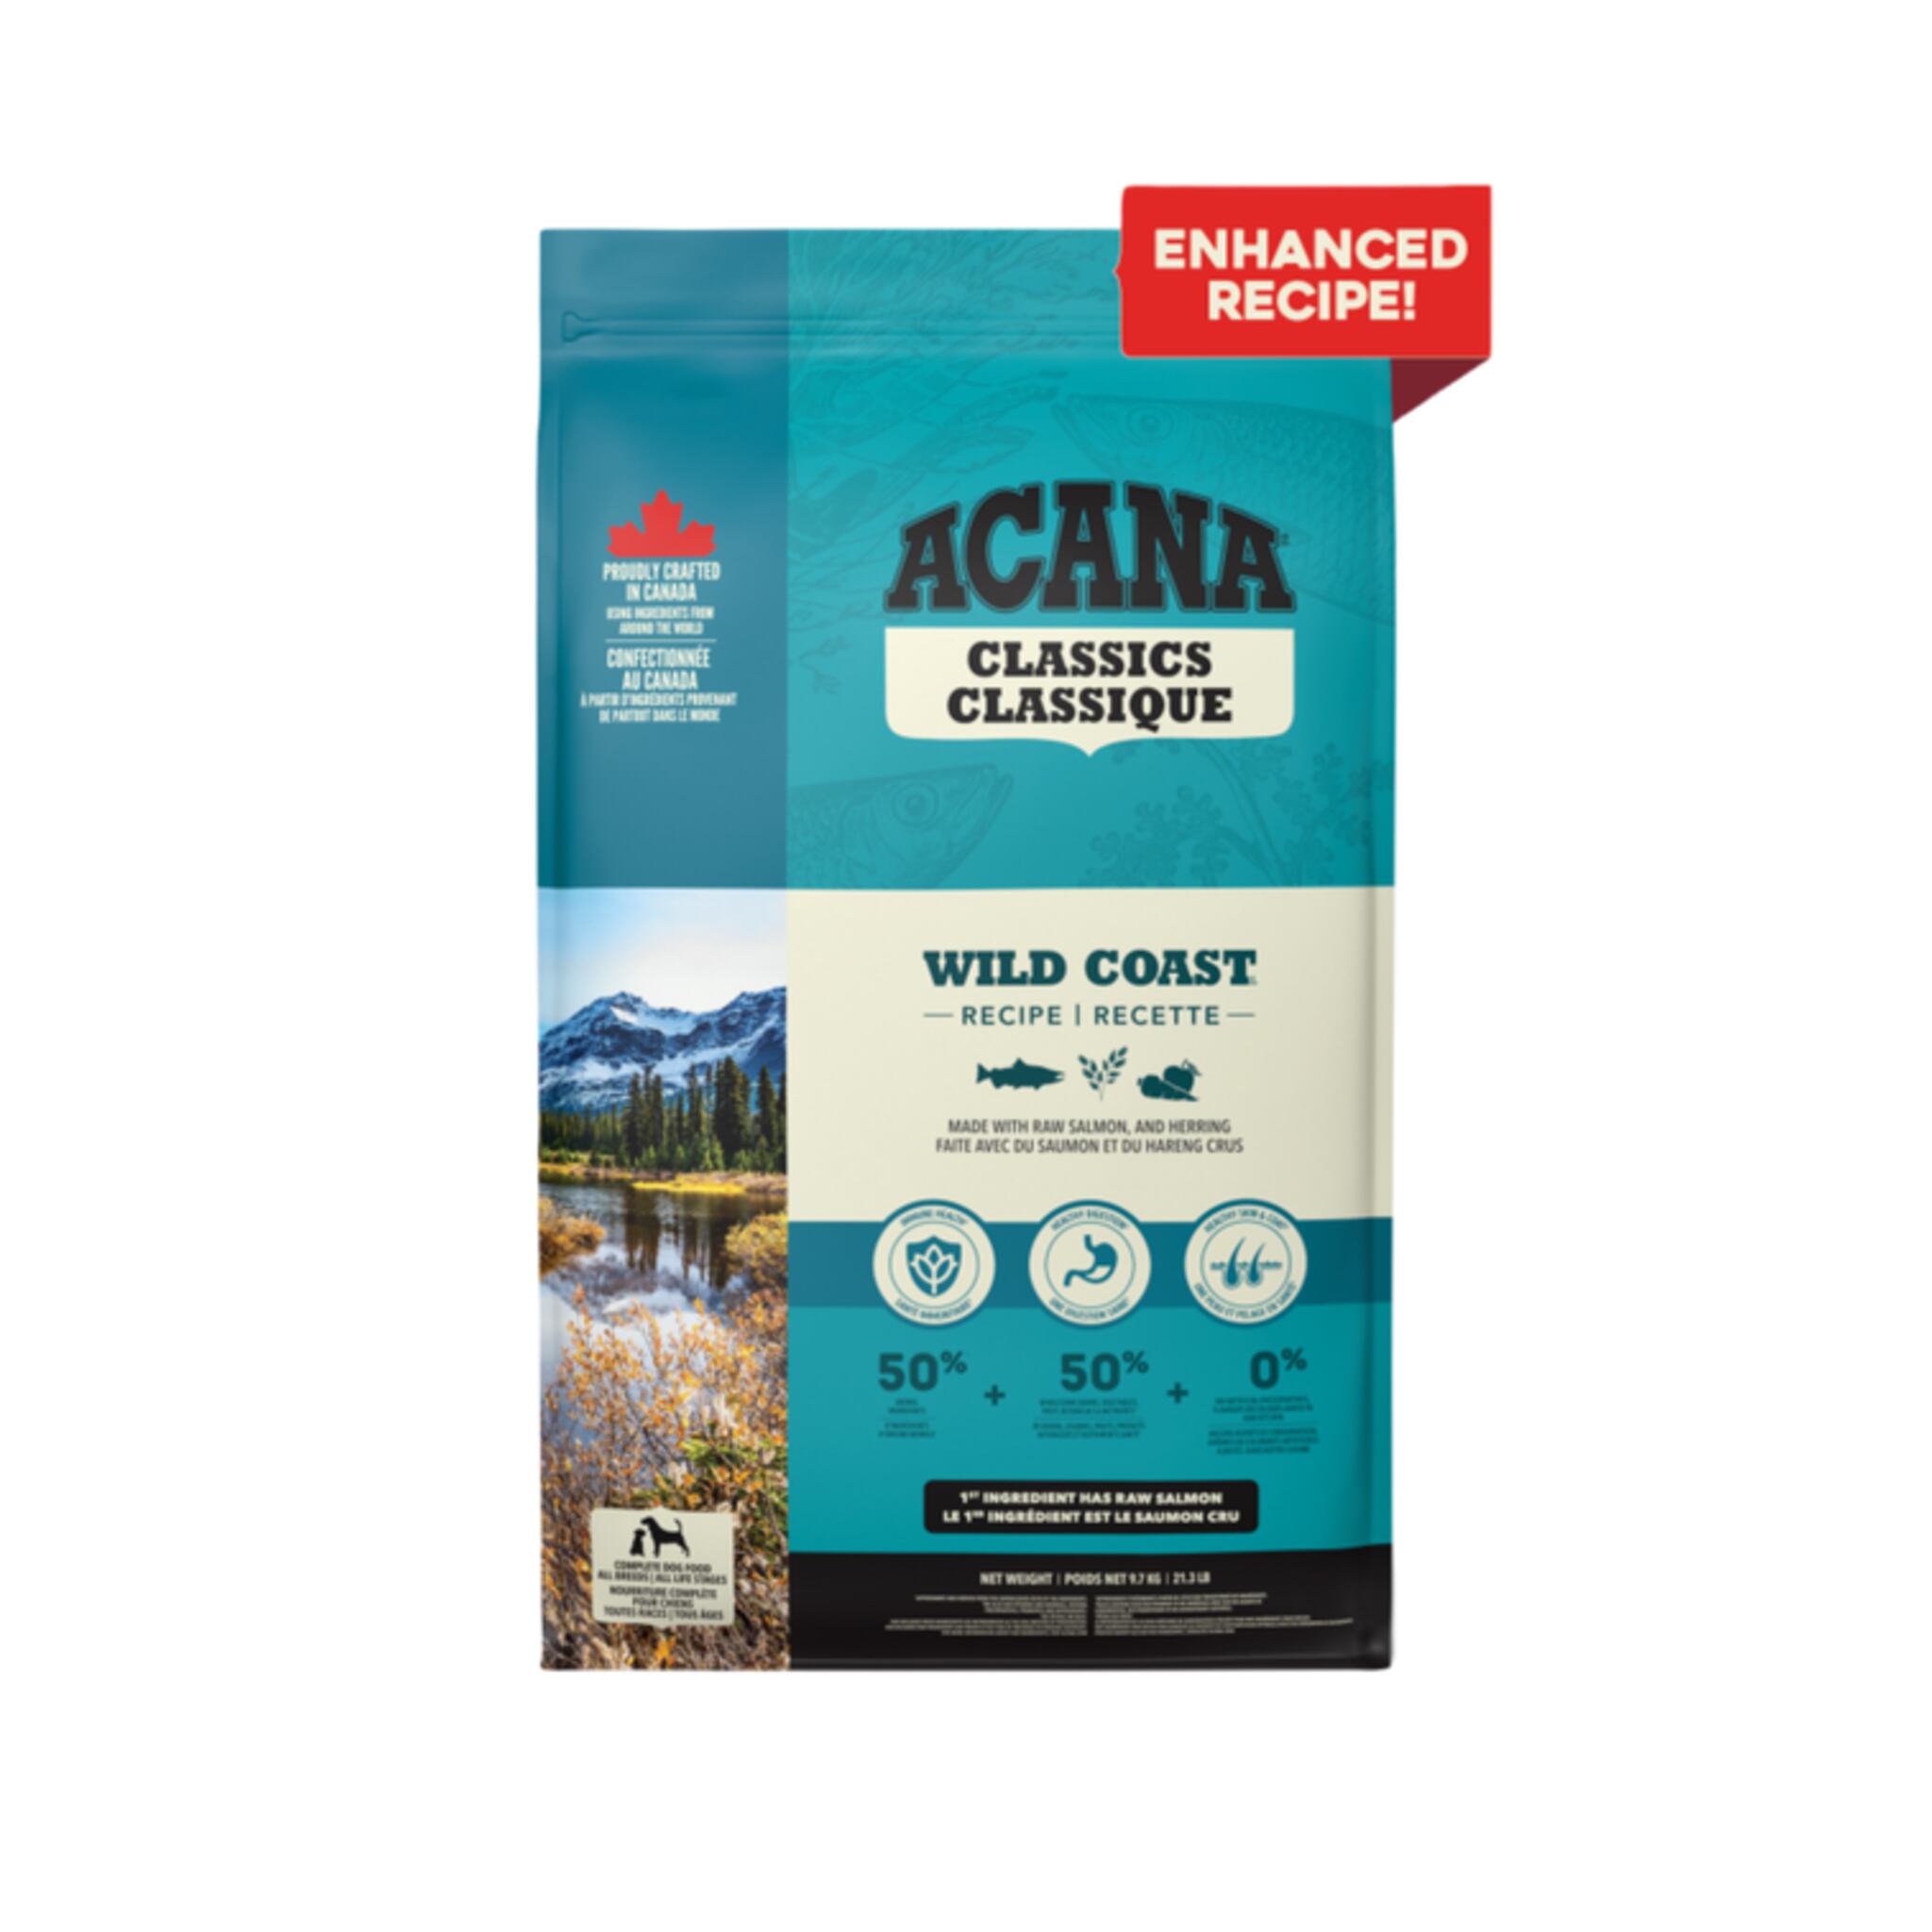 A bag of Acana Classics dog food, Wild Coast recipe, 21.3 lb.